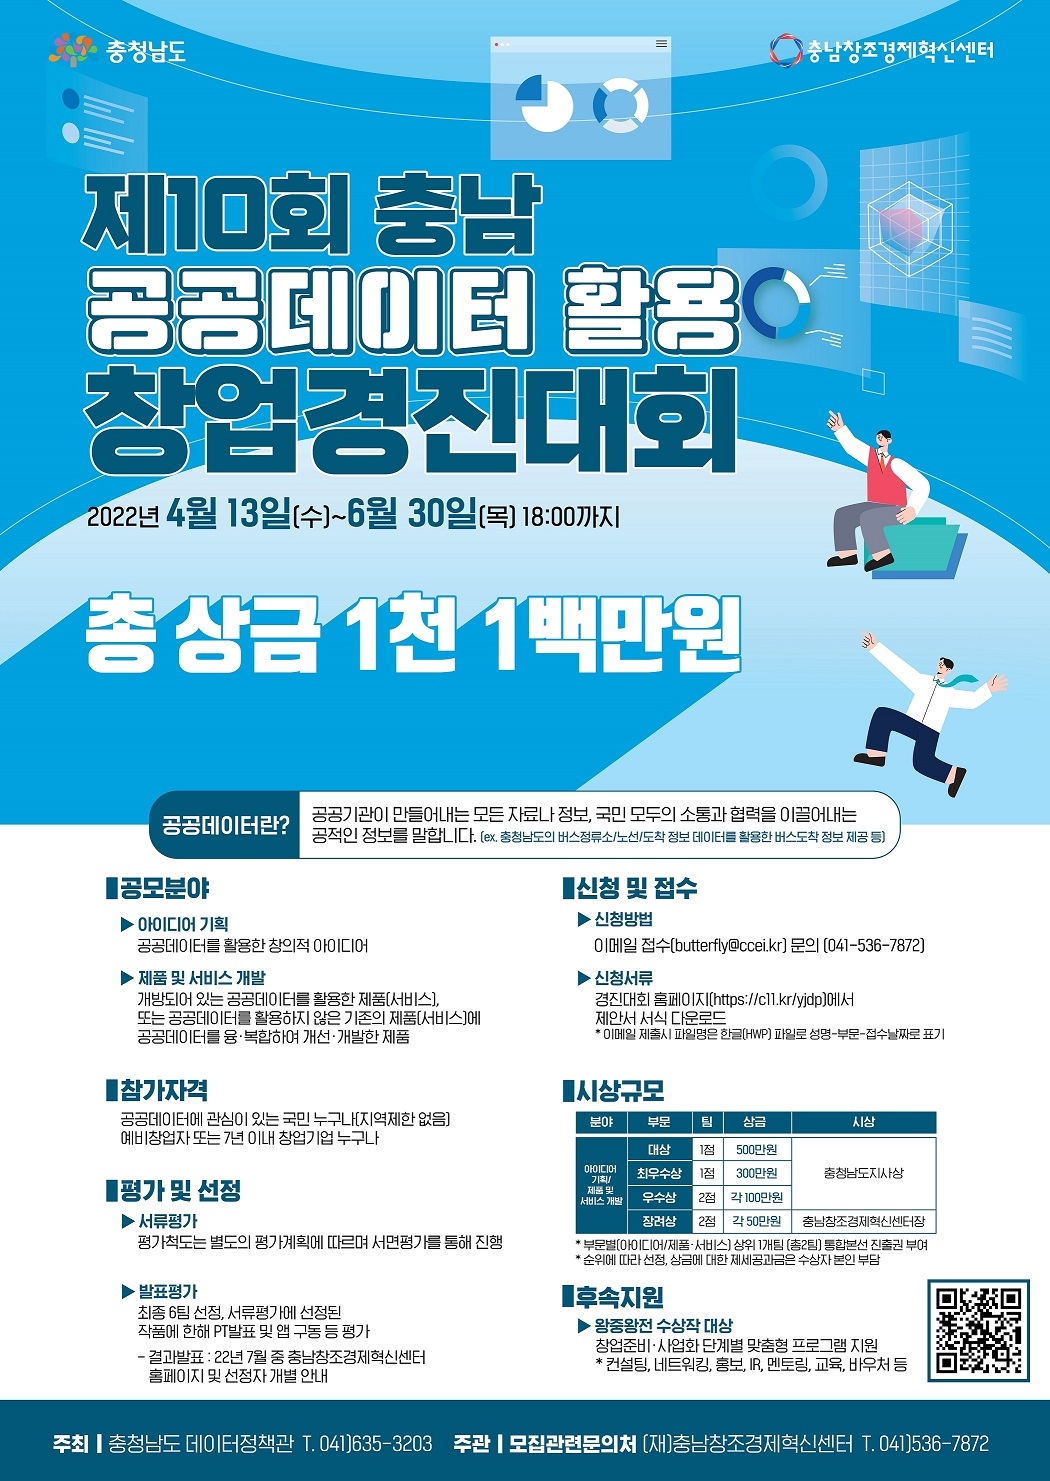 [공모전] 제10회 충청남도 공공데이터 활용 창업경진대회 개최 안내